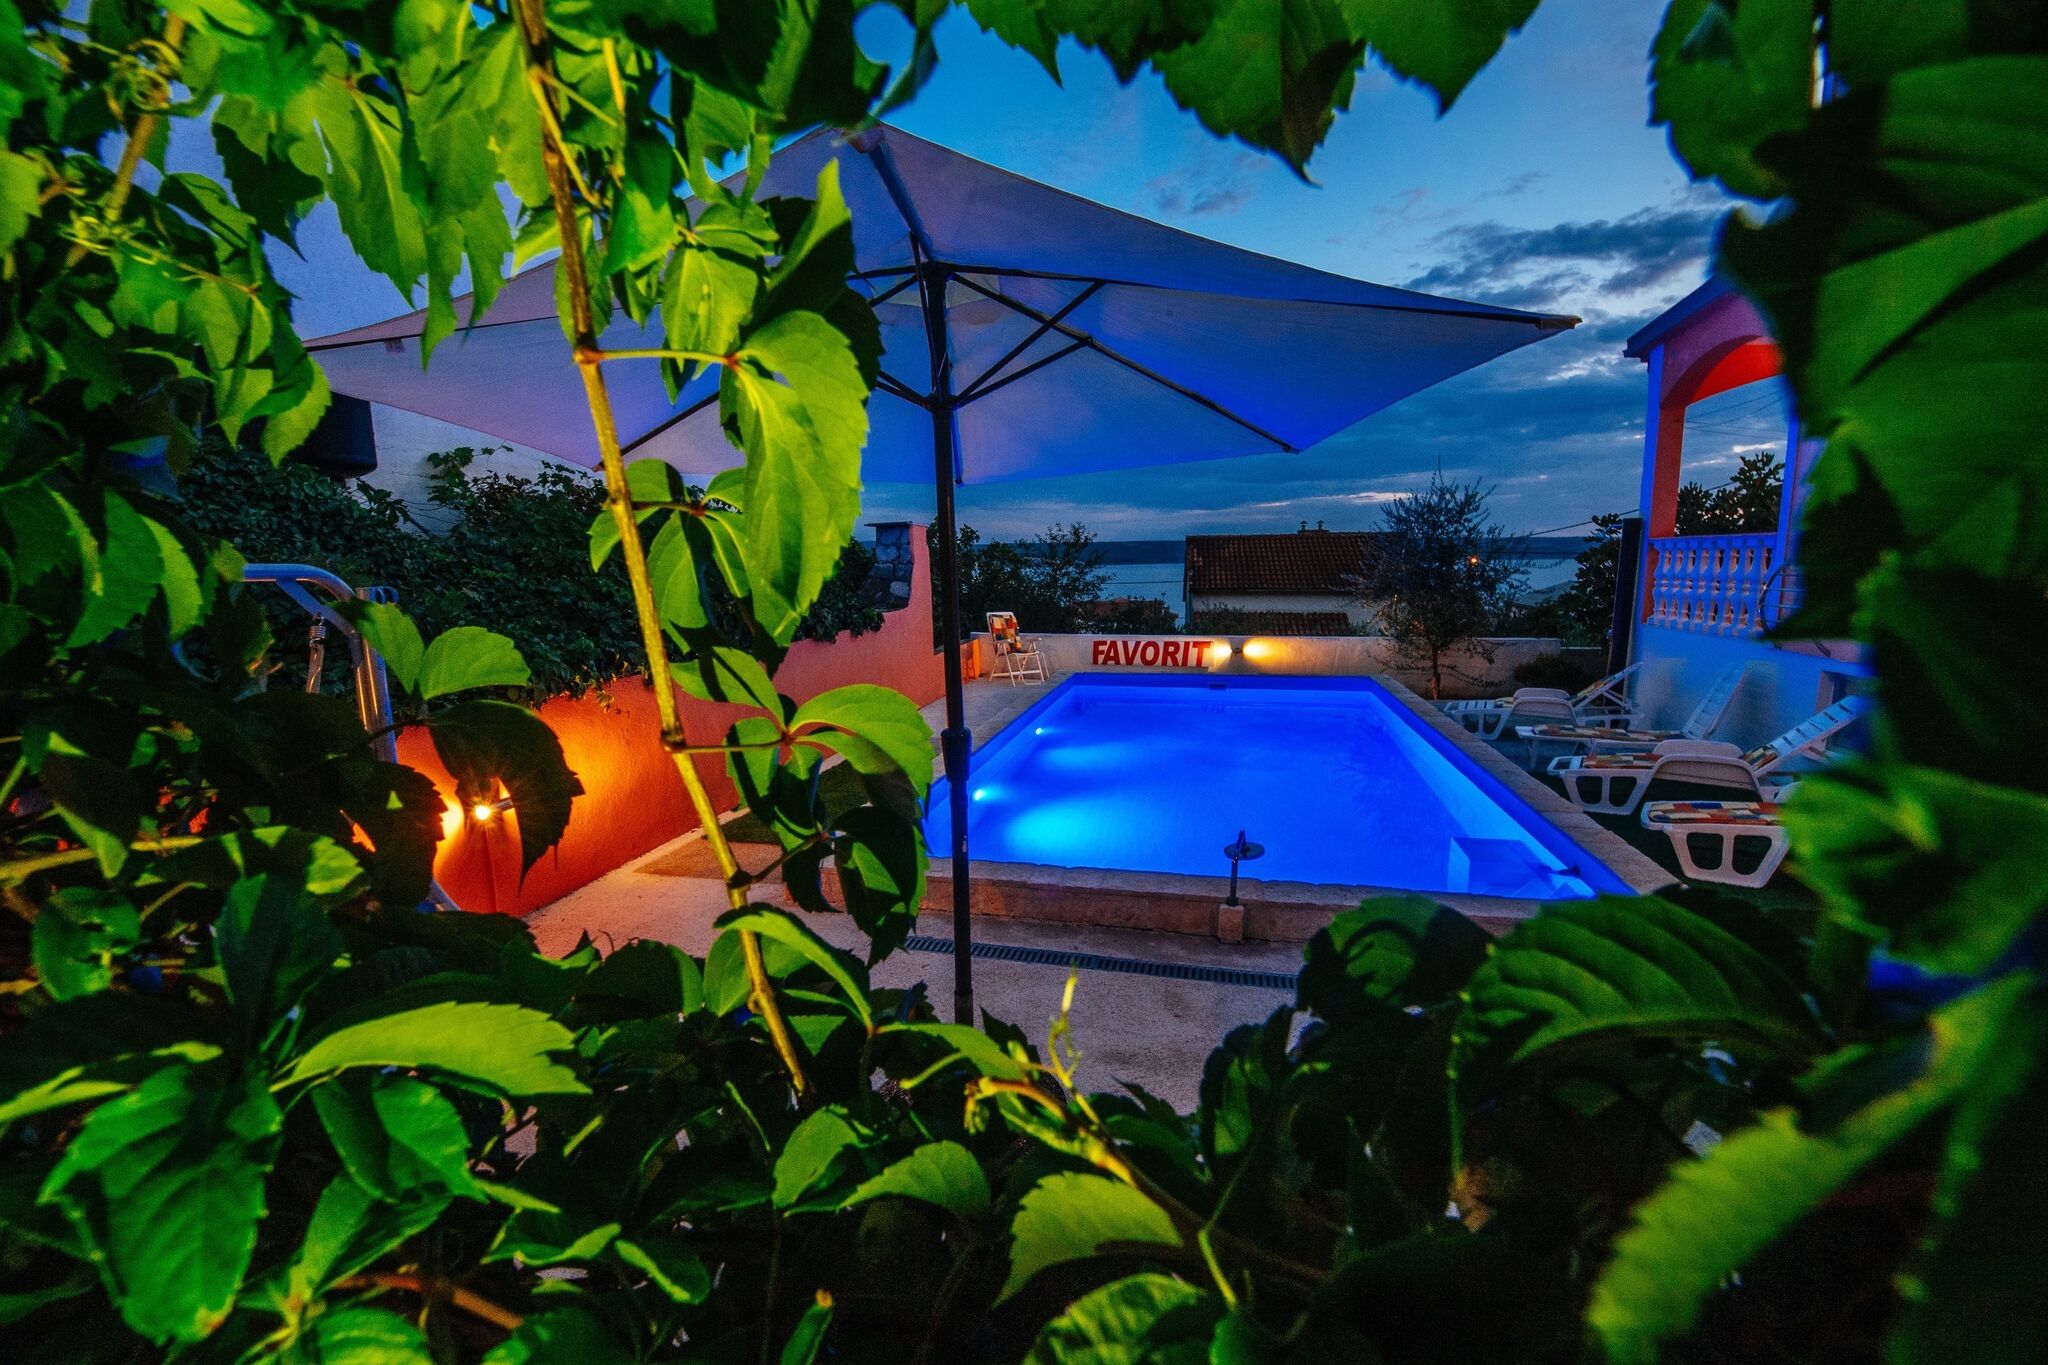 Ruim vakantiehuis met privézwembad op 200 m van het strand